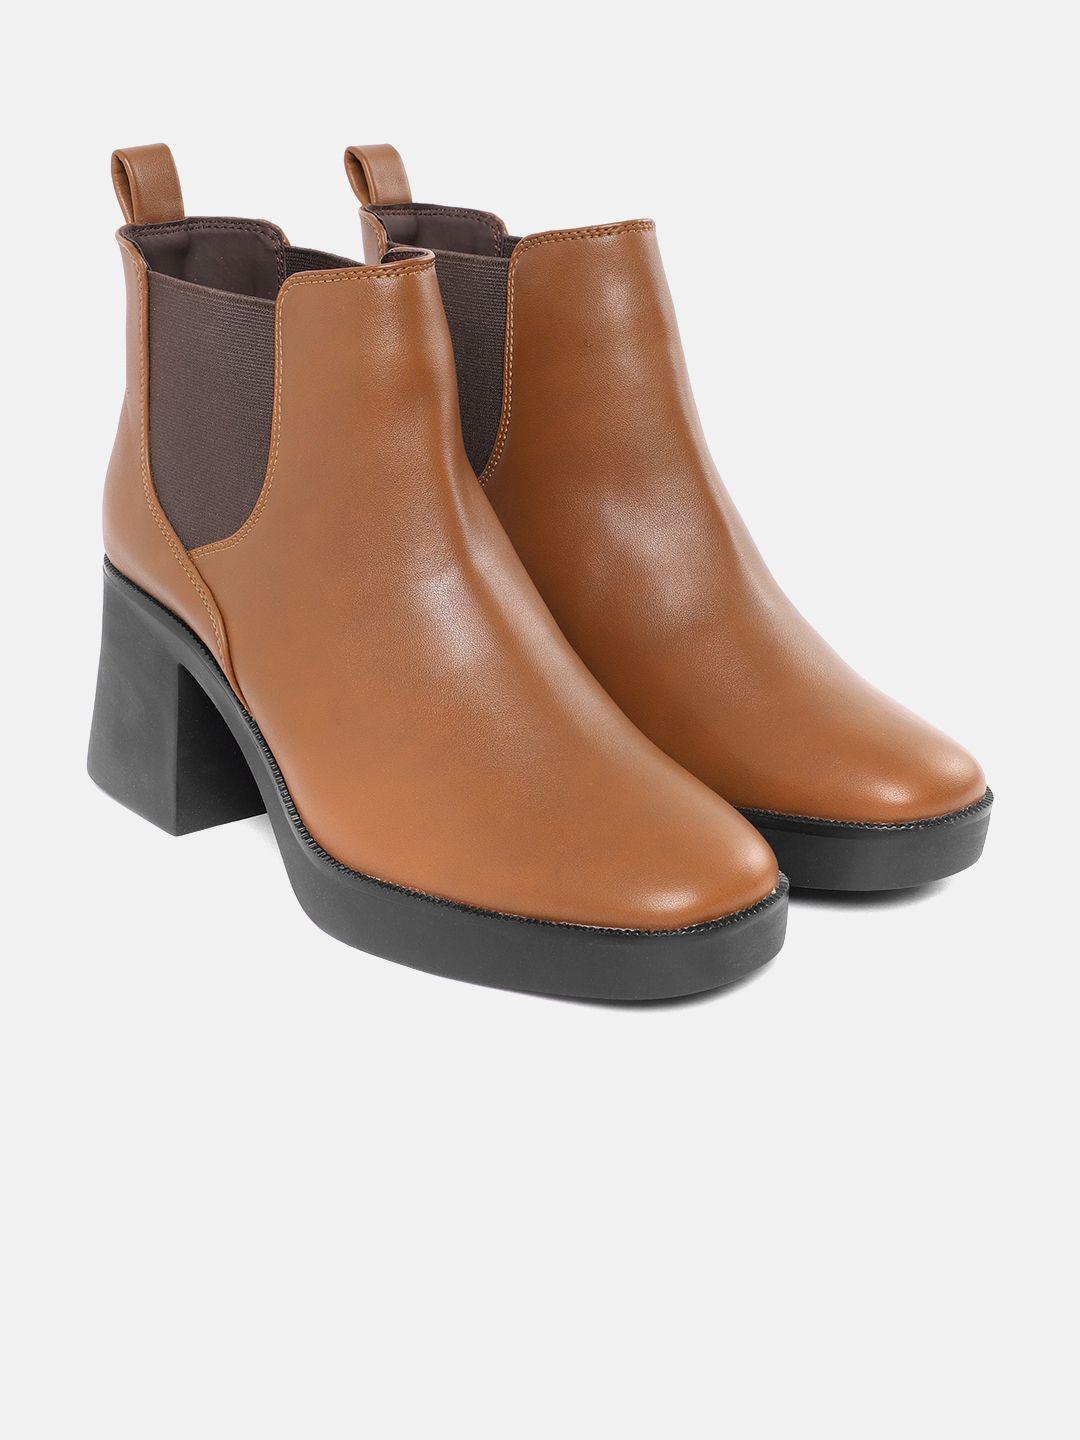 corsica women block heel mid-top chelsea boots